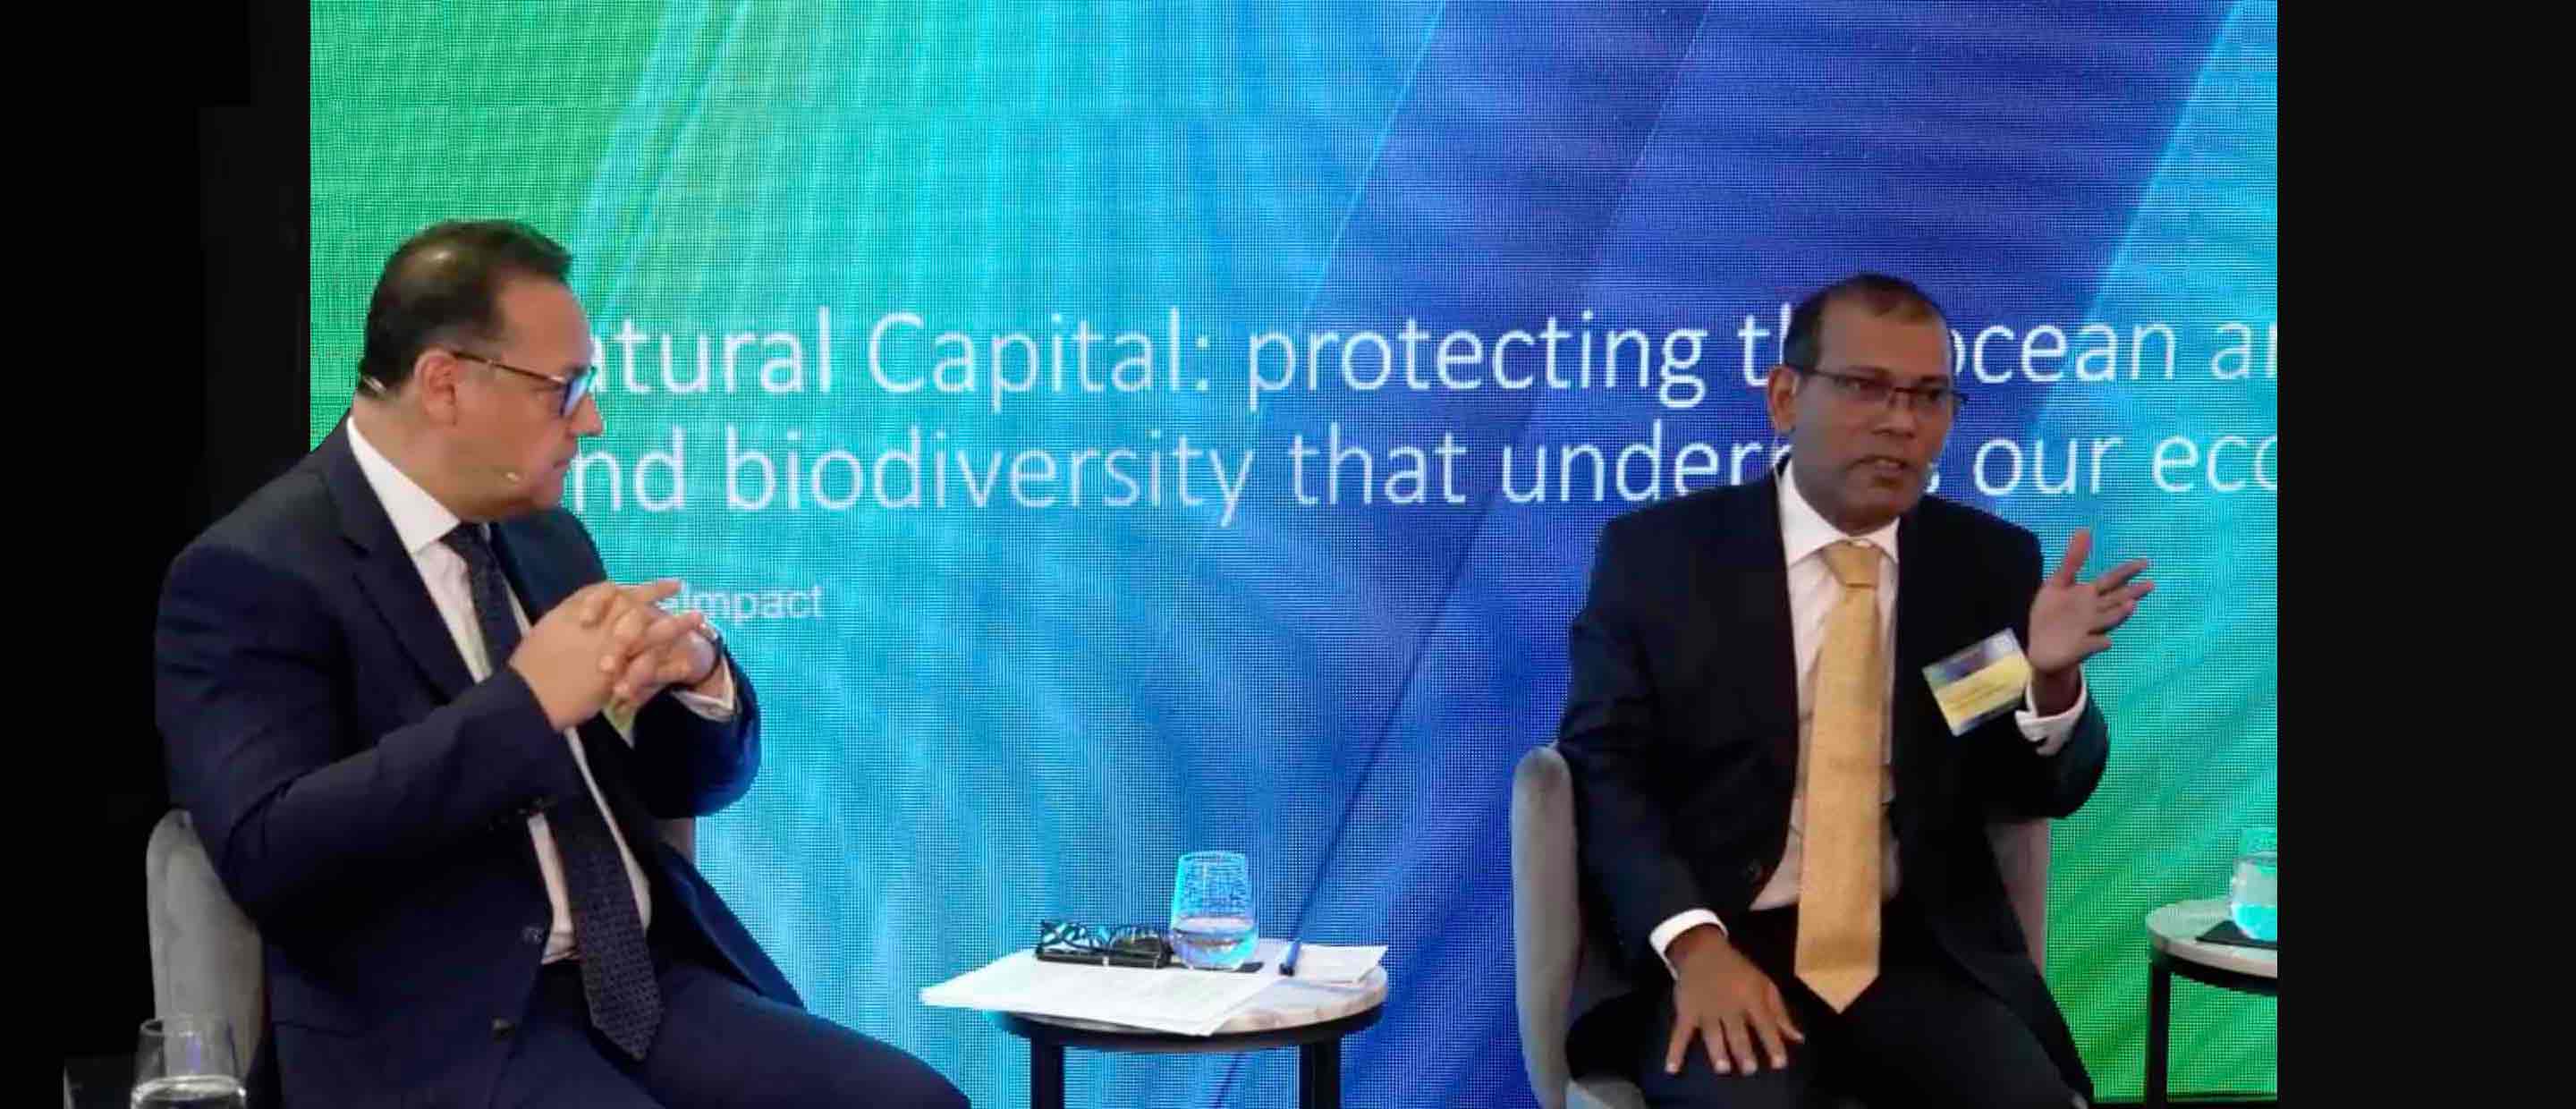 COP26 Natural Capital